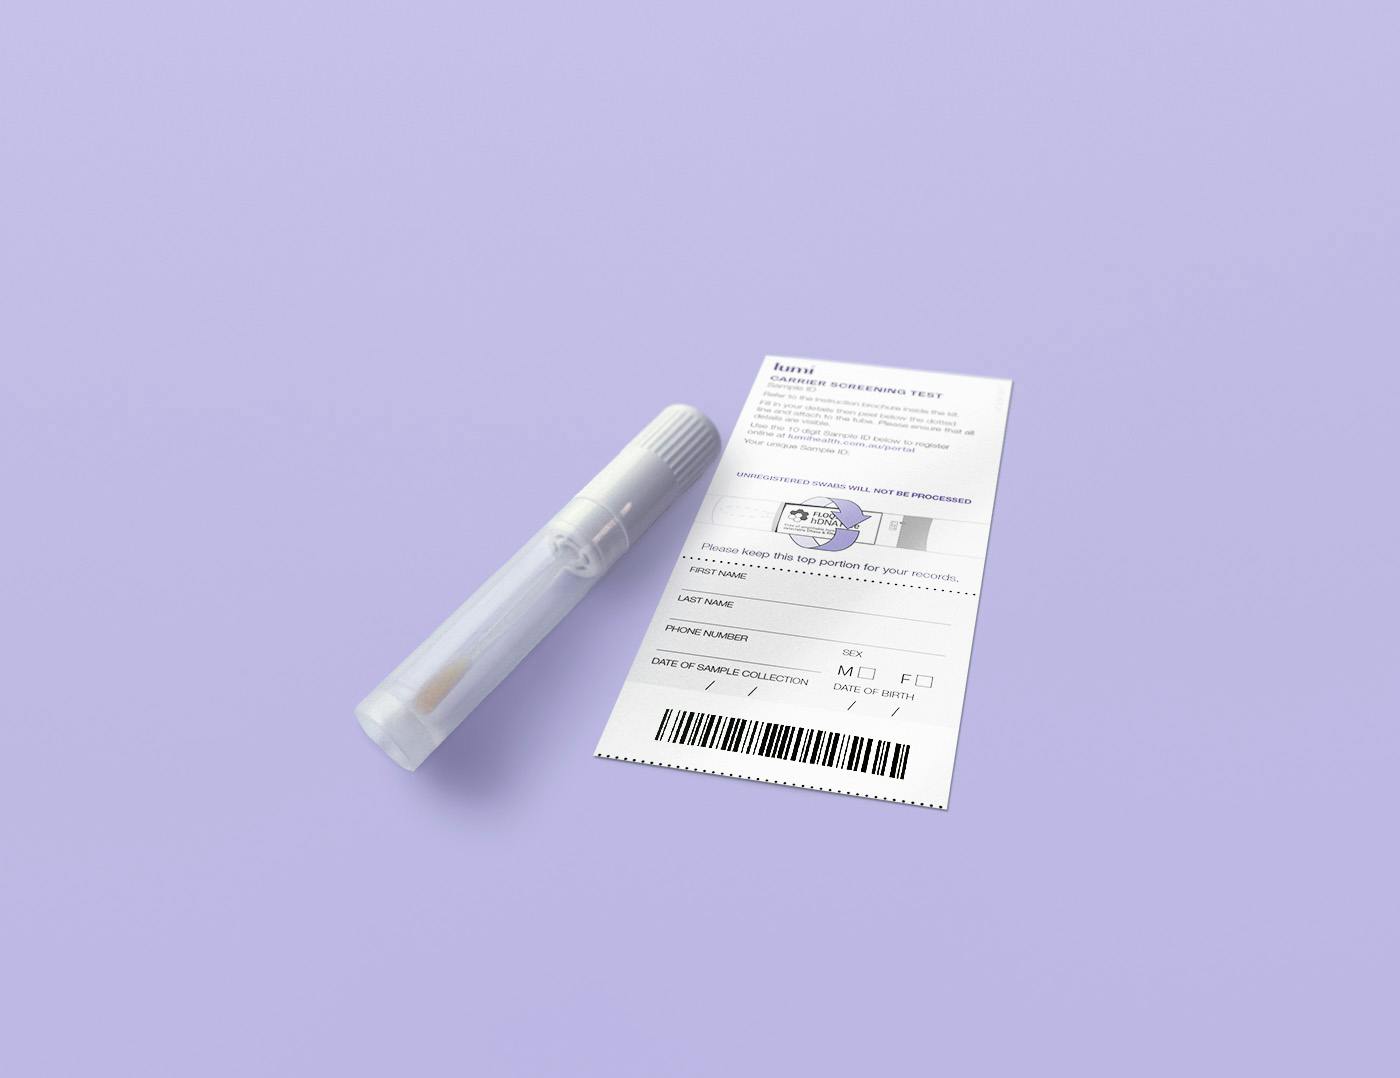 A Lumi cheek swab and Sample ID sticker